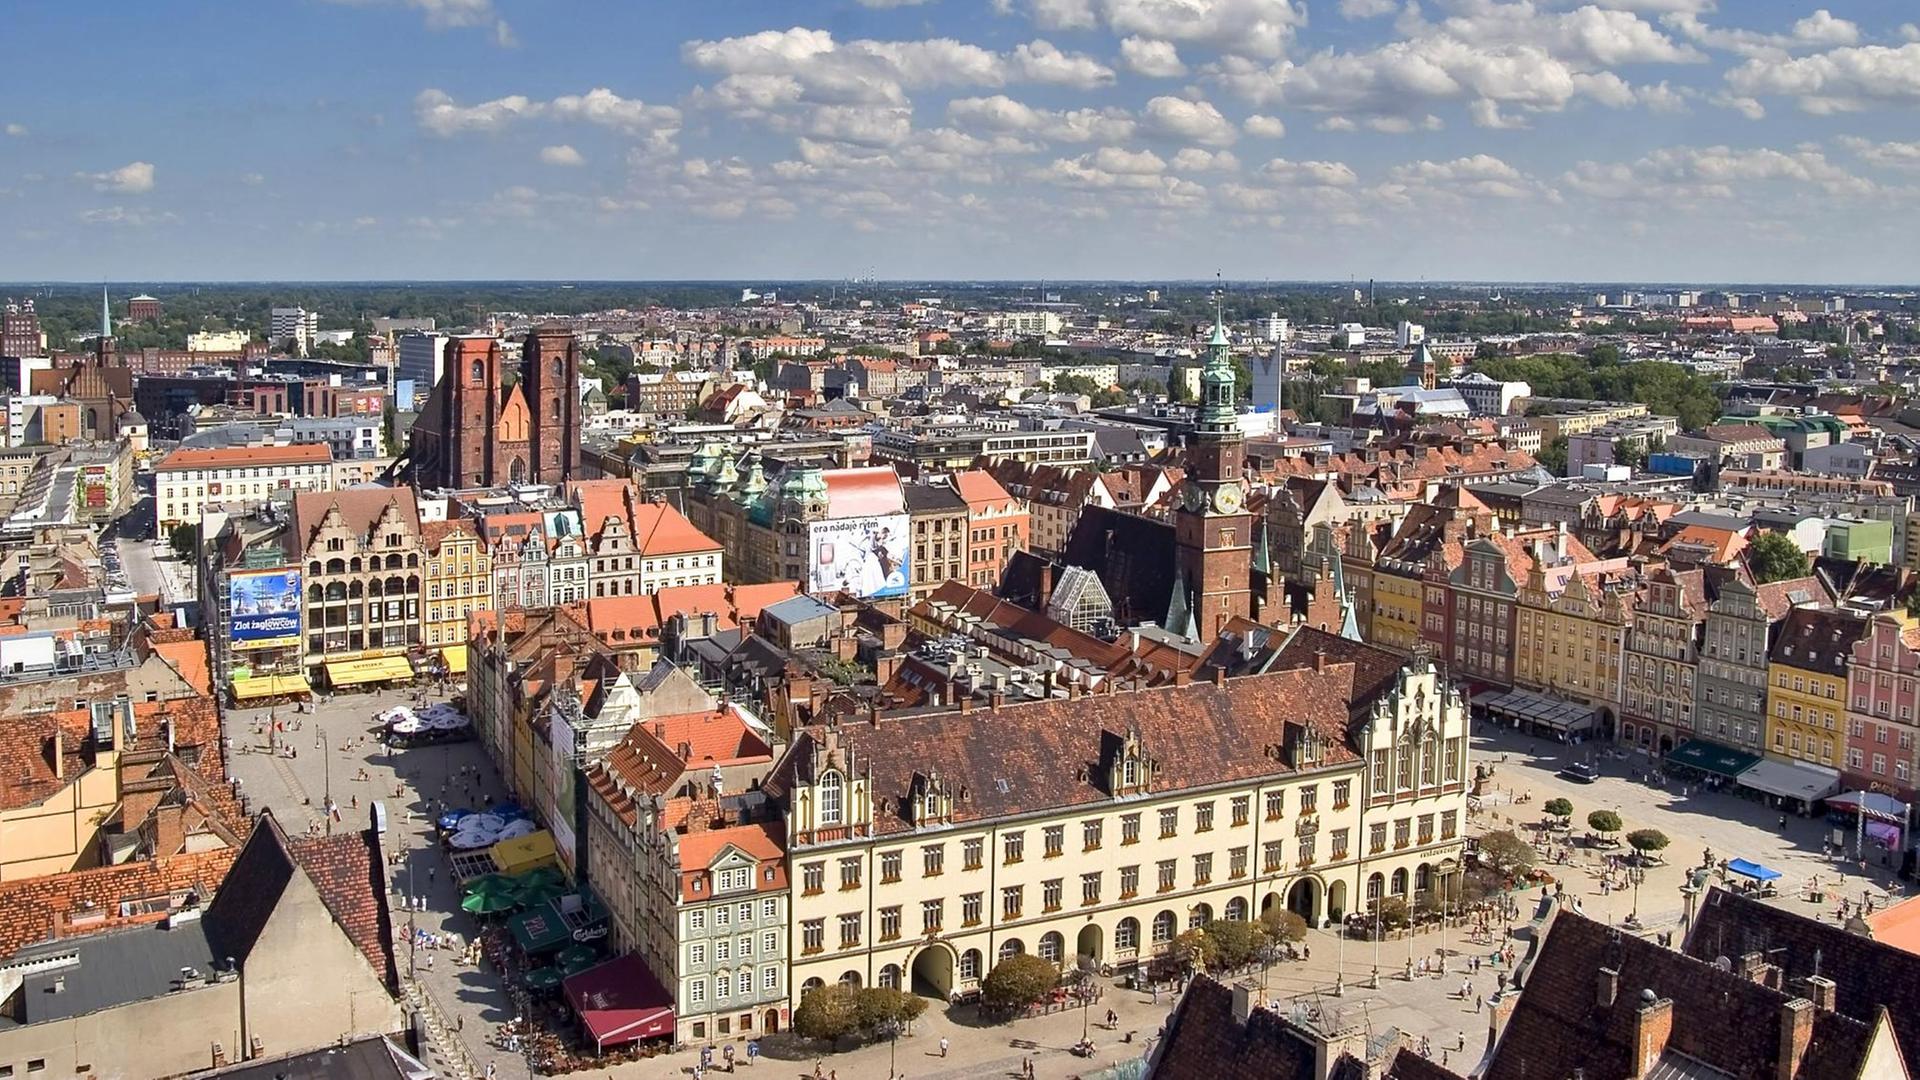 Blick über Breslau(Wroclaw) mit dem gotischen Rathaus und der Maria-Magdalena-Kirche